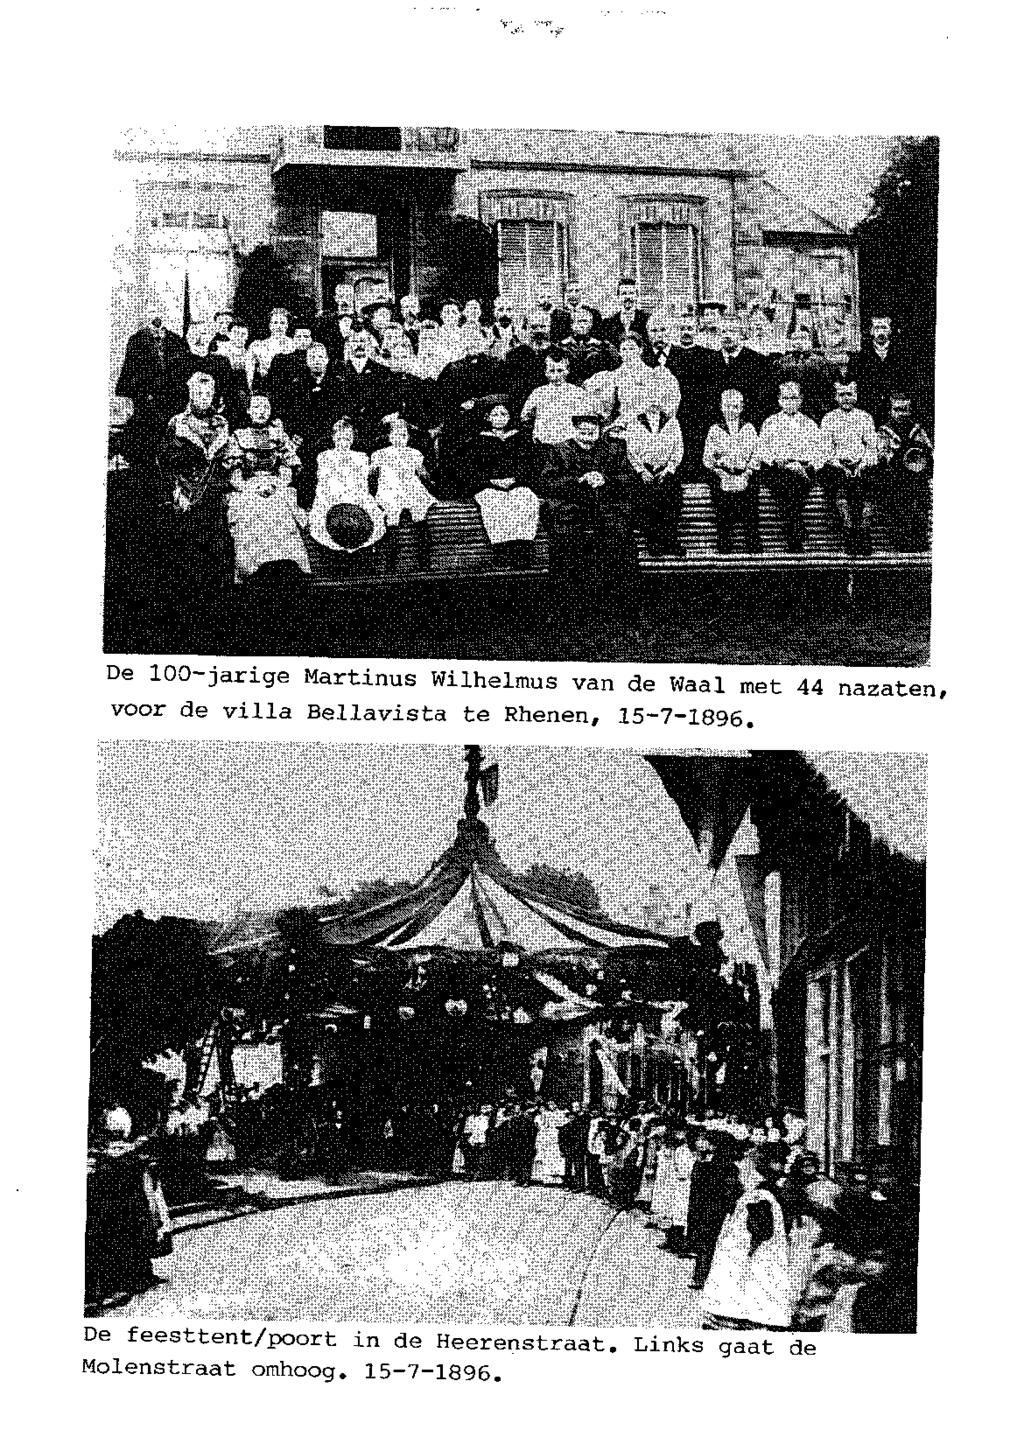 De 100-jarige Martinus Wilhelmus van de Waal met 44 nazaten, voor de villa Bellavista te Rhenen, 15-7-1896.